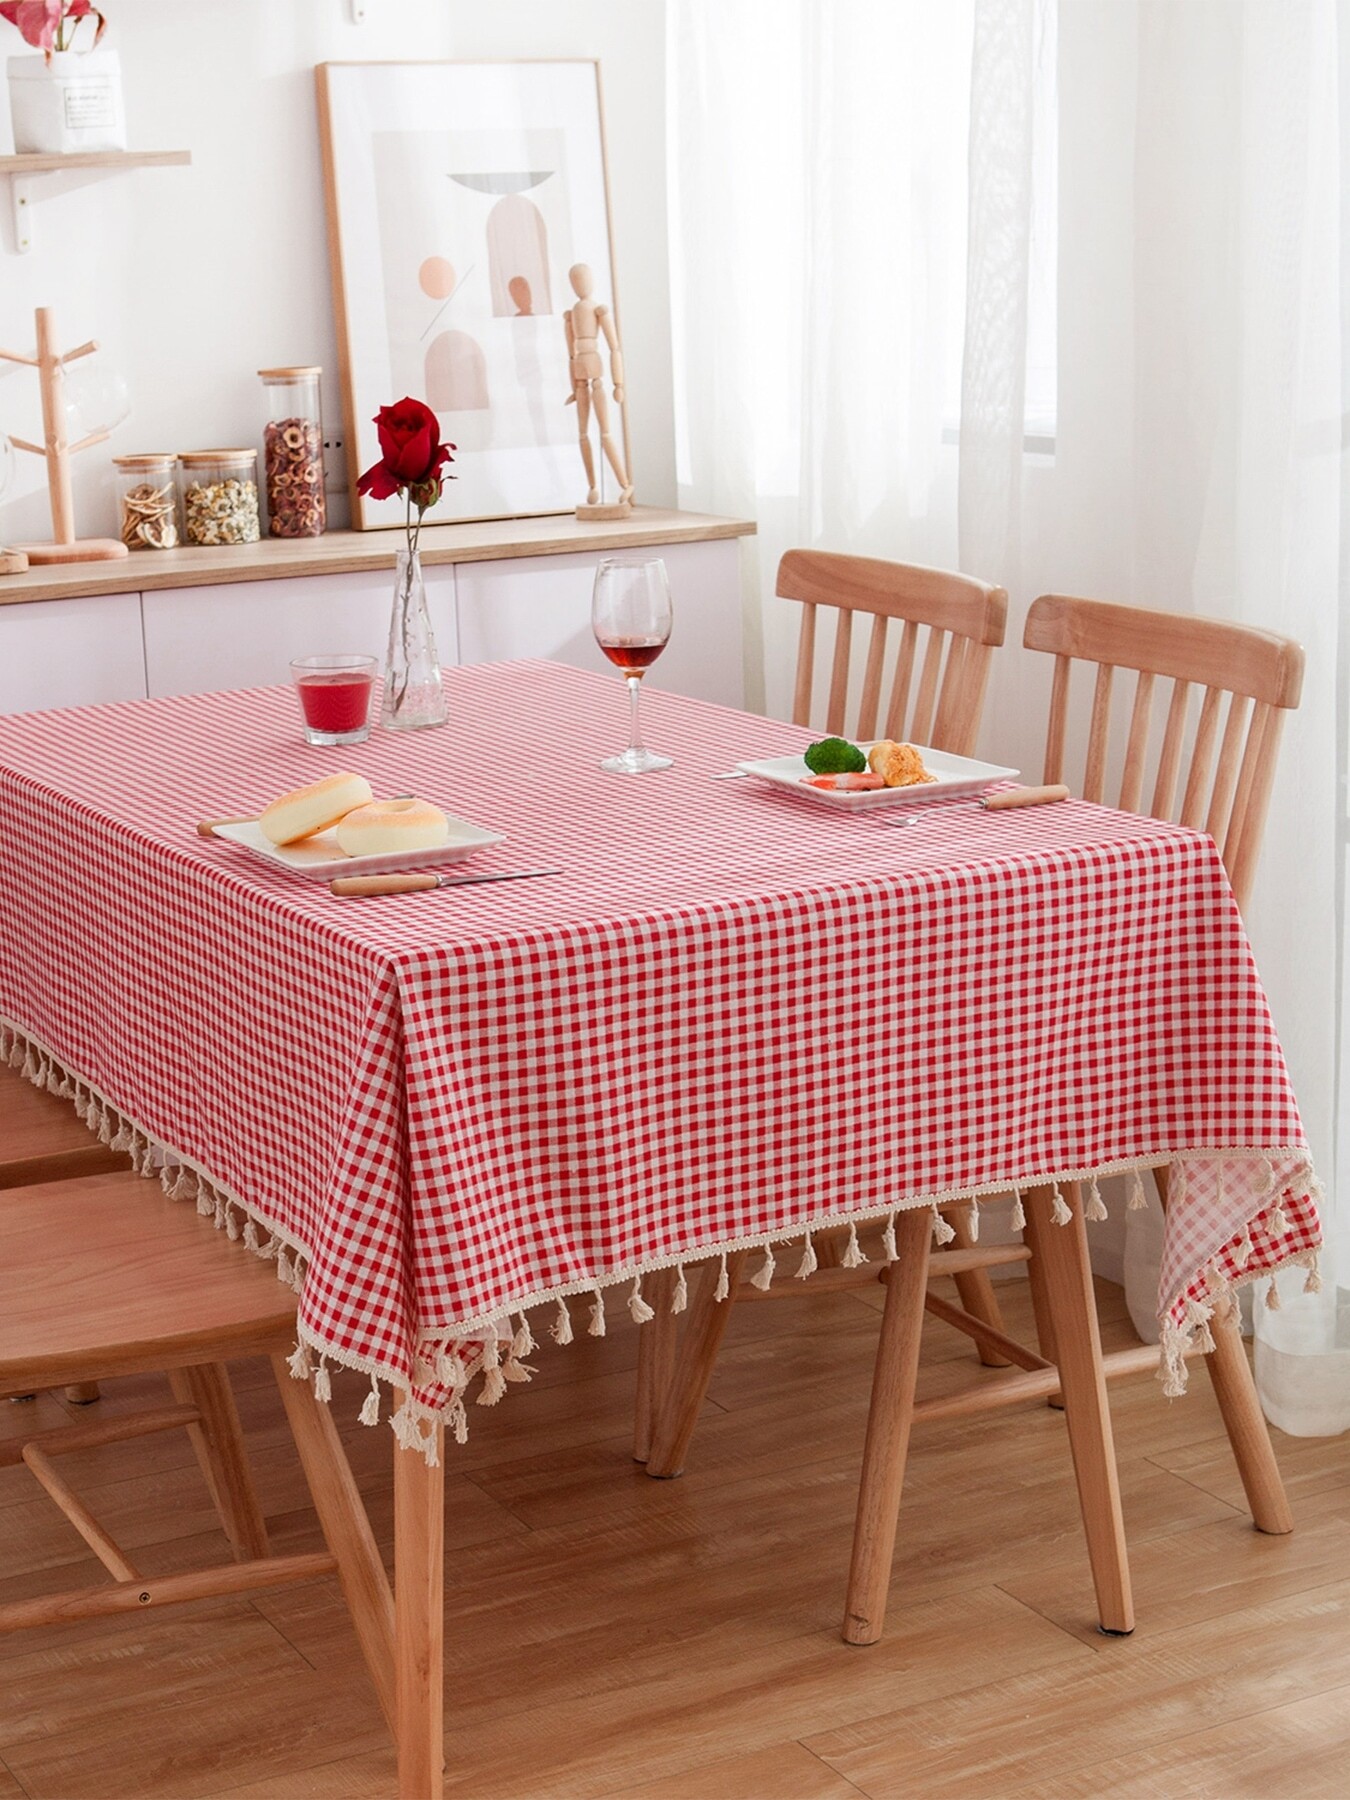 Chỉ từ 67k liền có ngay mẫu khăn trải bàn mới cho bàn ăn gia đình ngày Tết thêm xinh - Ảnh 8.